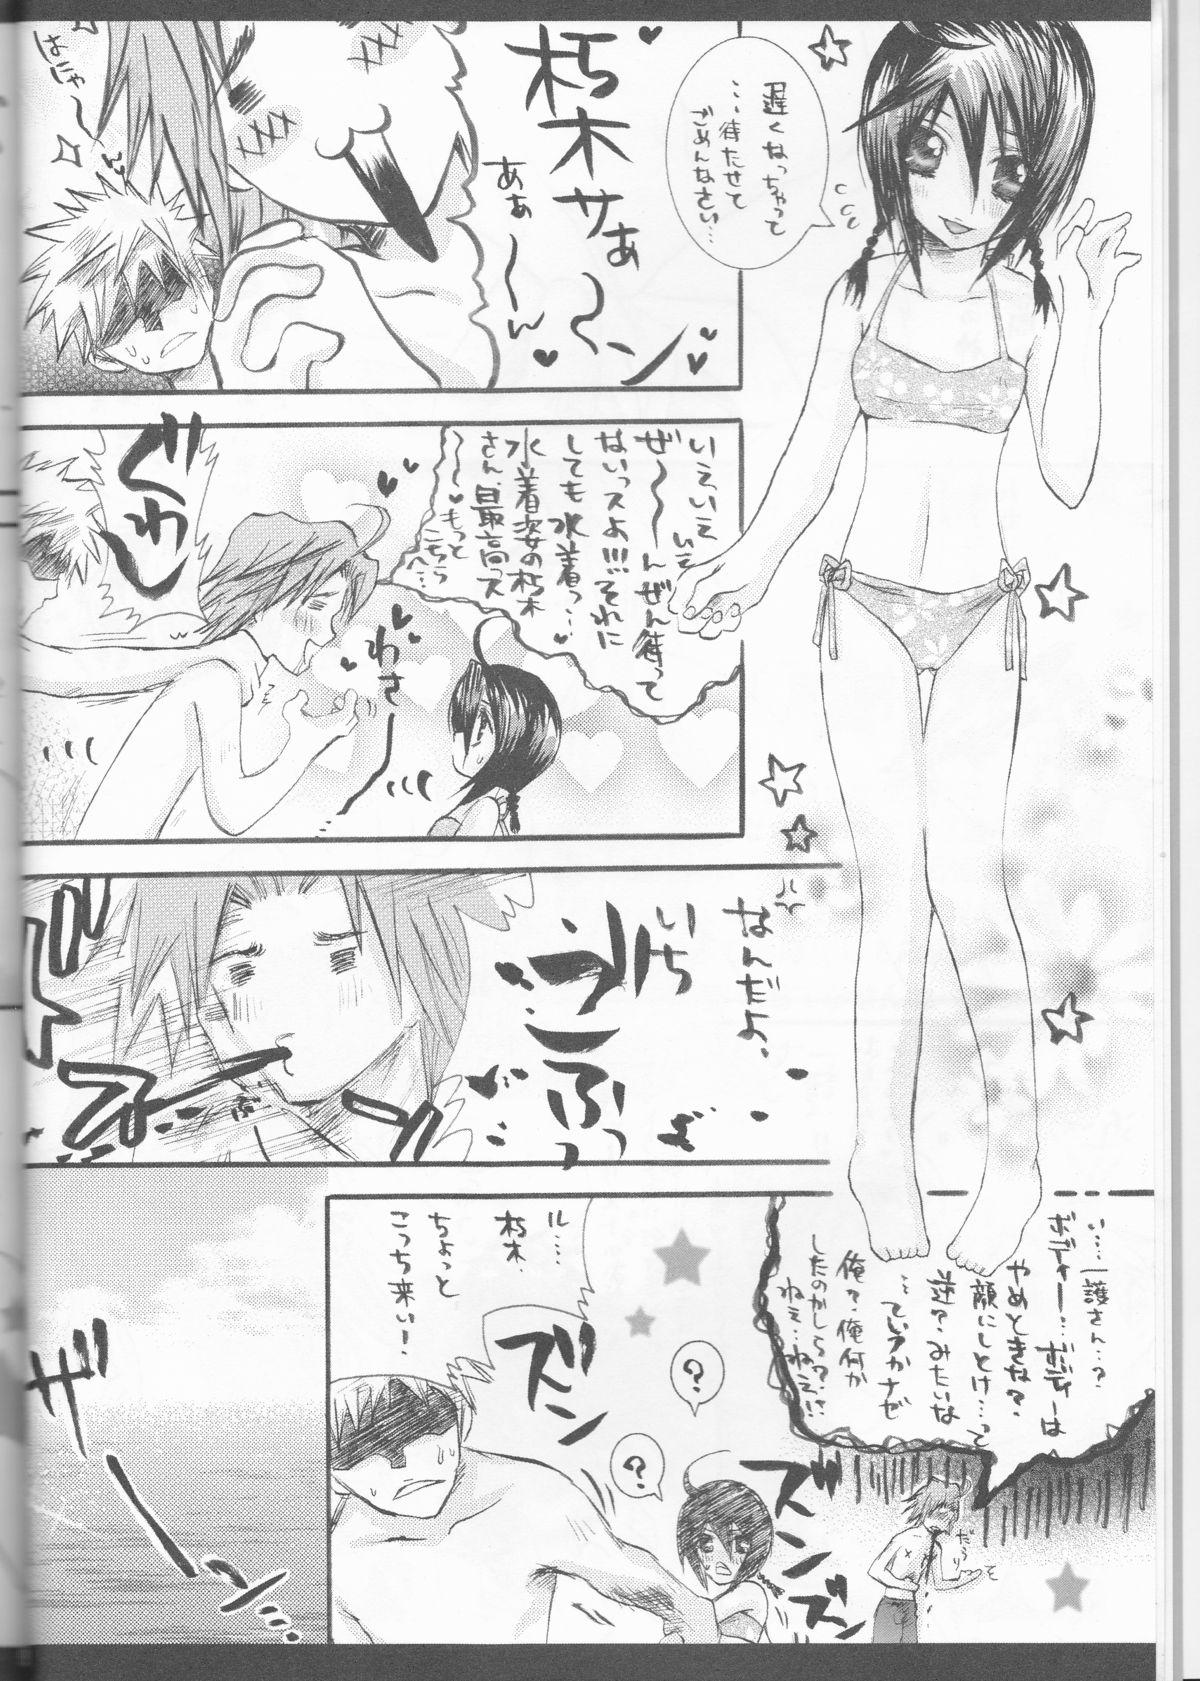 4some Rukia Kuchiki Minimum Maniax File - Bleach Naked - Page 8